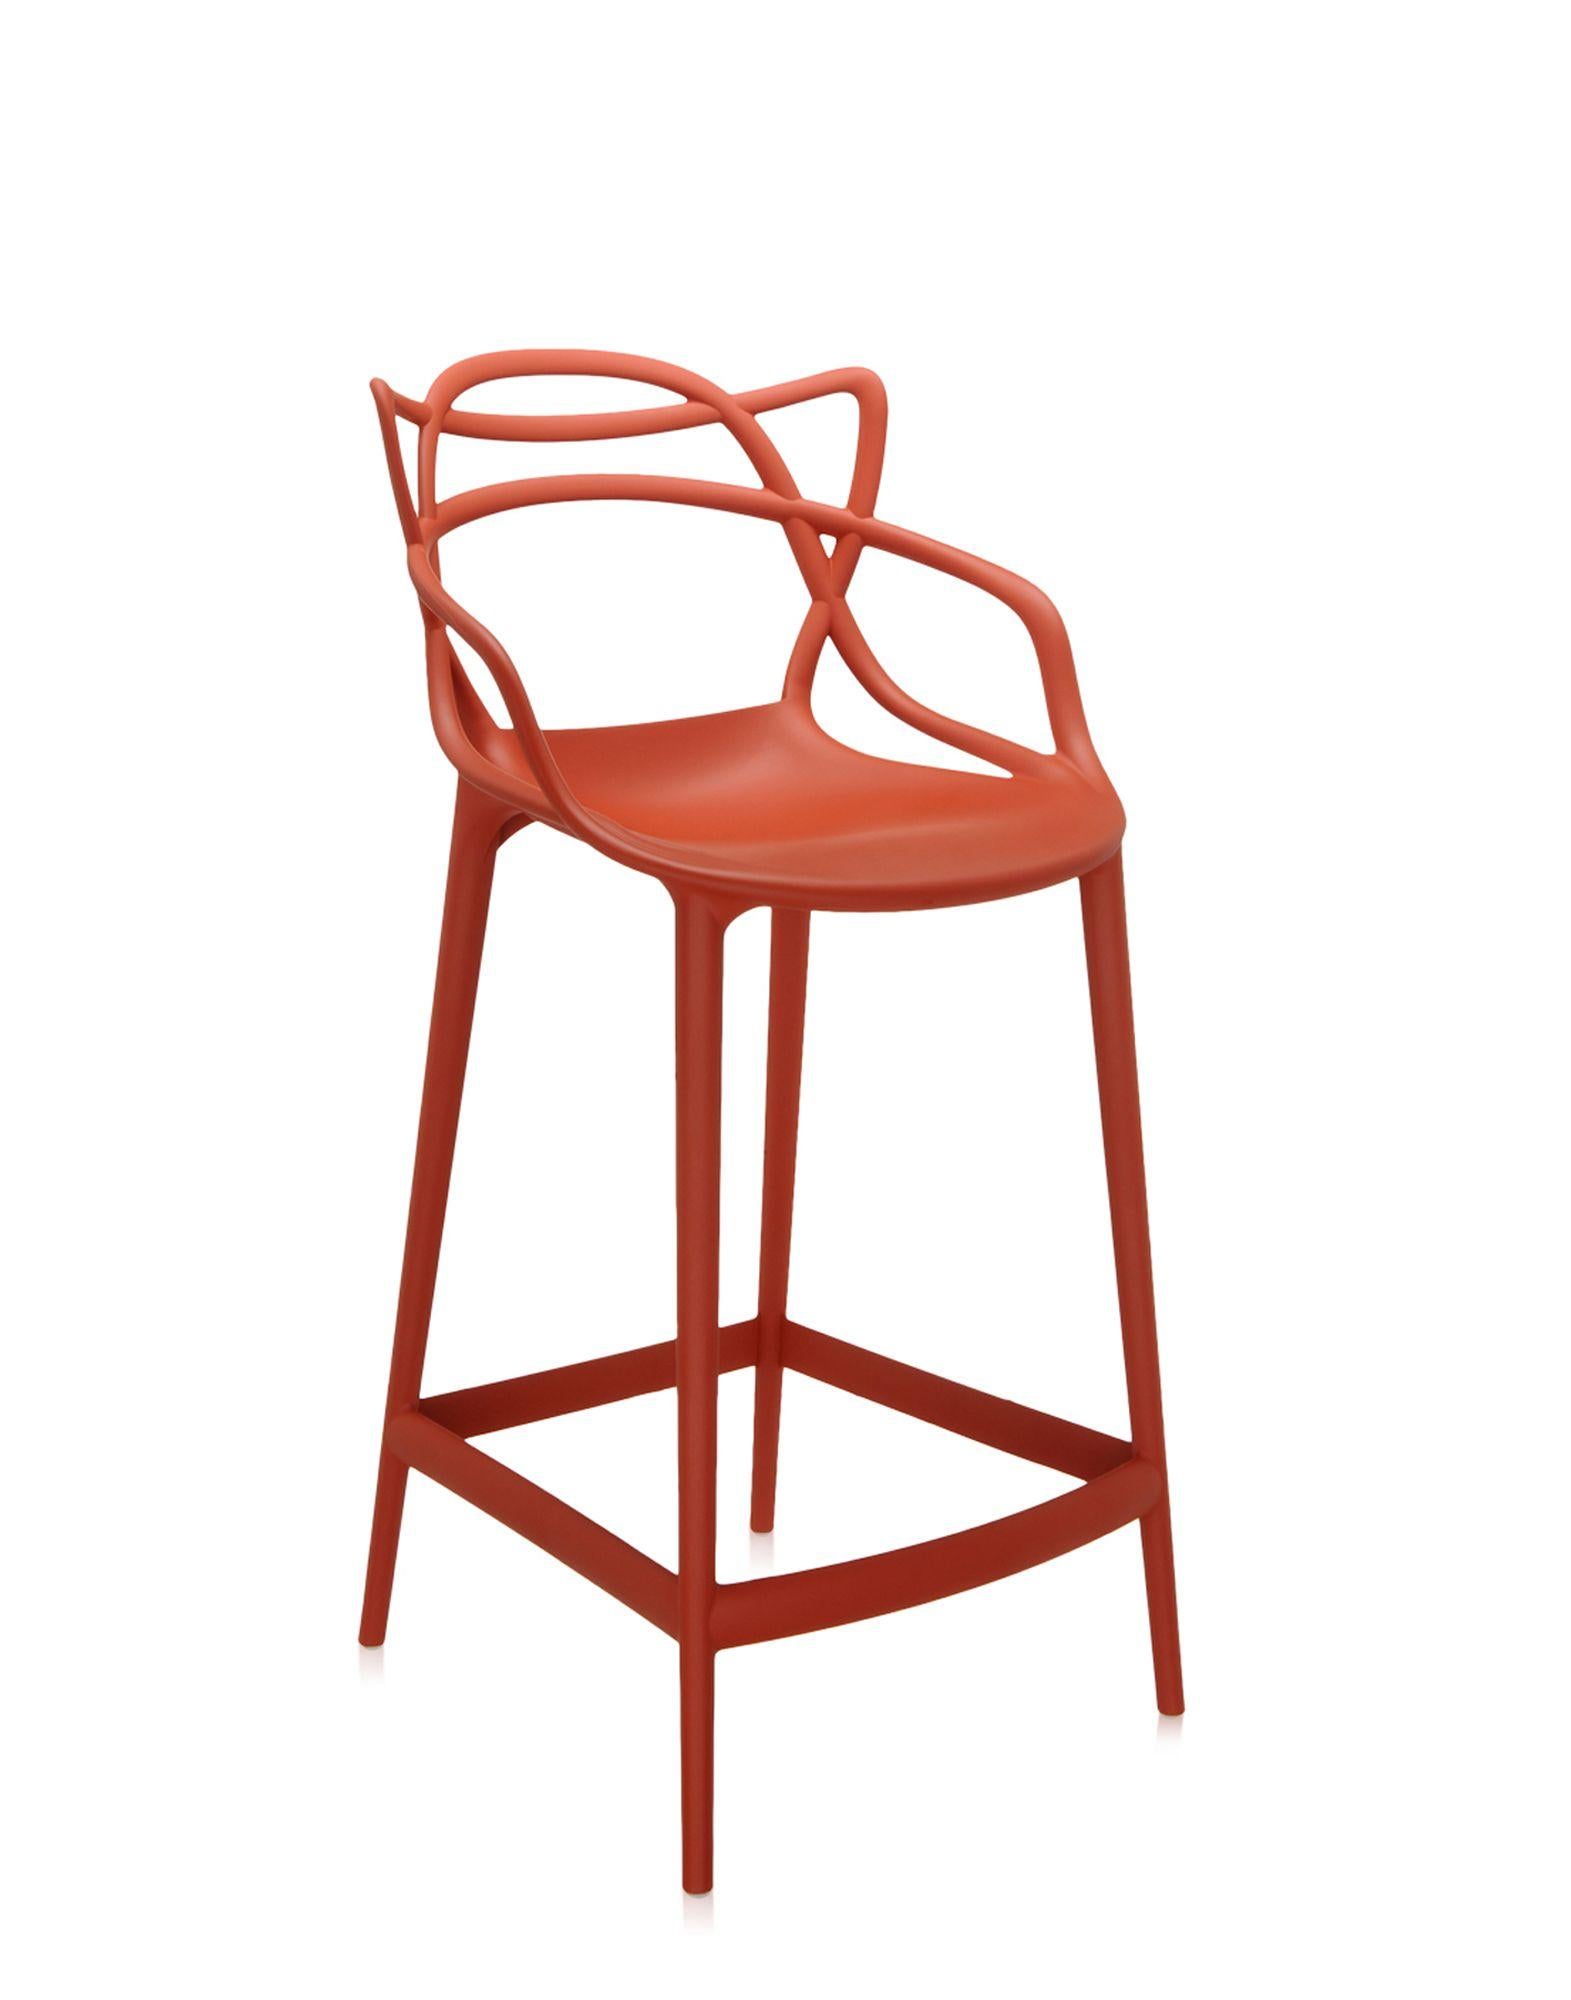 Kartell propose également une version tabouret de la chaise Masters, lauréate du Good Design Award 2010 et du Red Dot Award 2013, et best-seller mondial. Les pieds sont allongés et l'assise est rétrécie, mais l'aspect graphique inimitable du cadre,